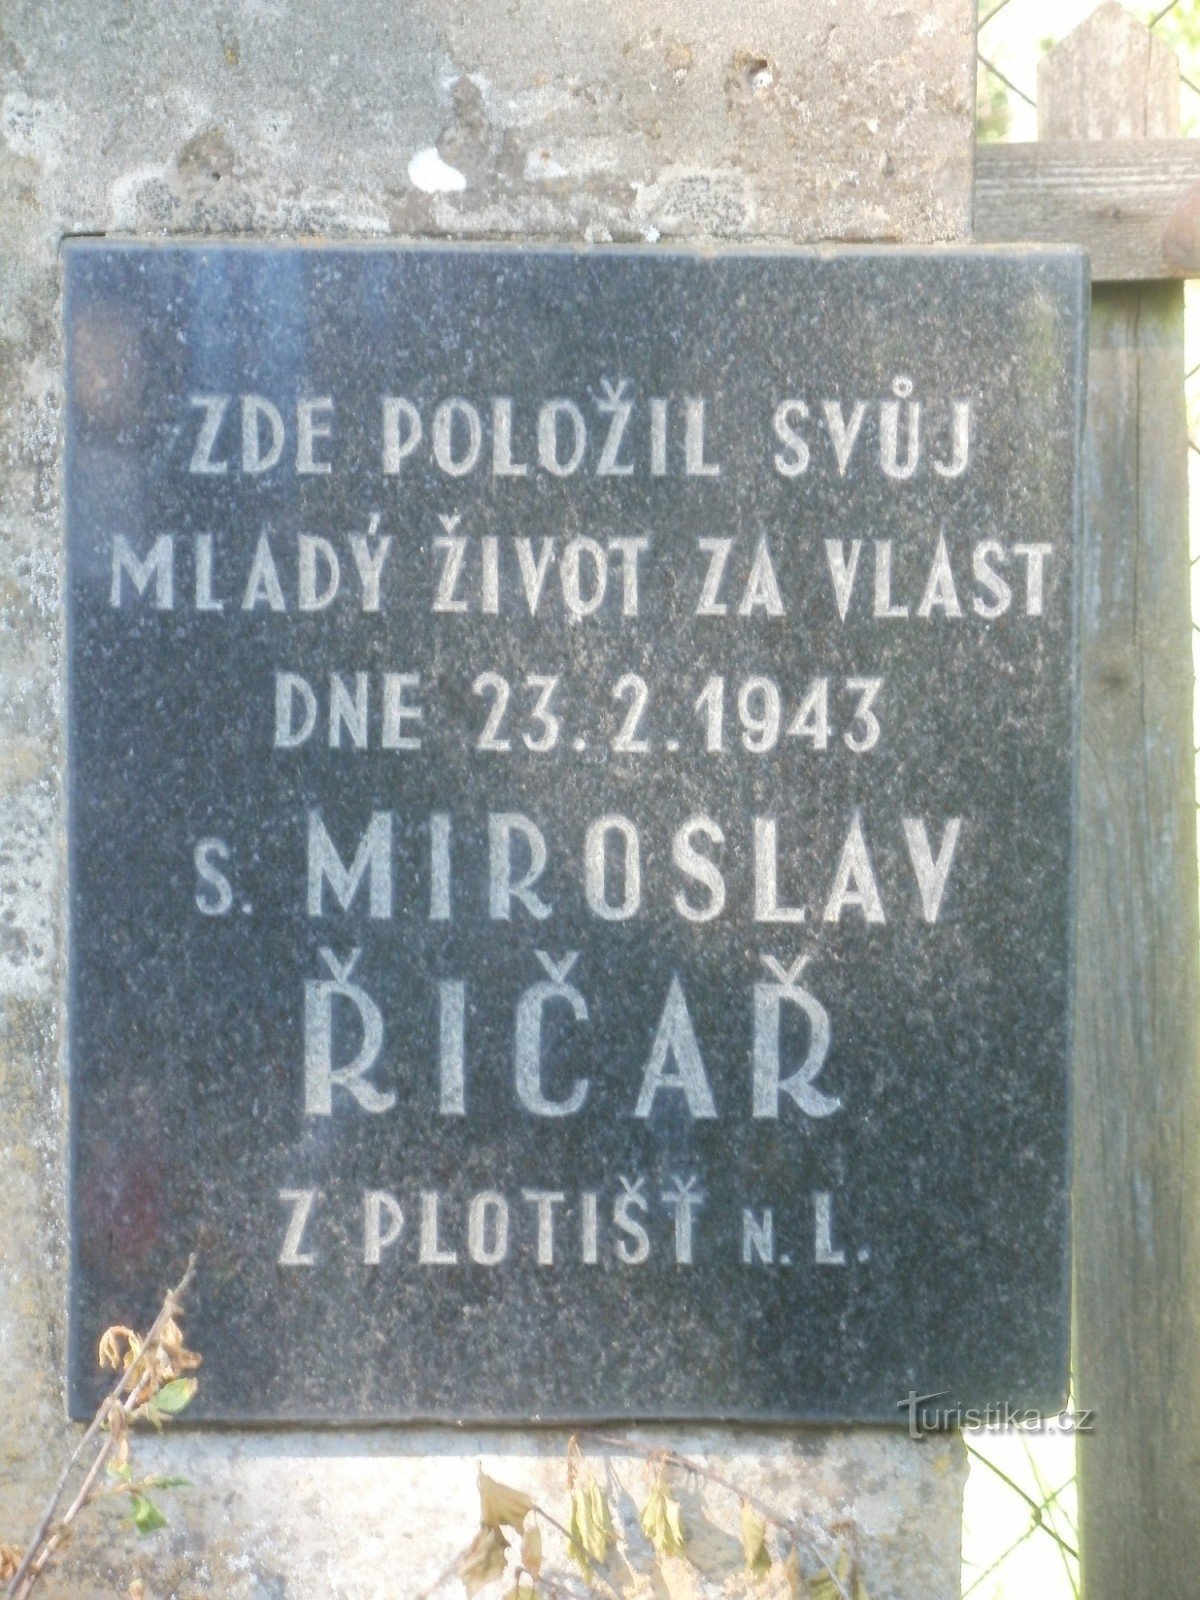 memoriale al sig. Říčař vicino a Týniště nad Orlicí